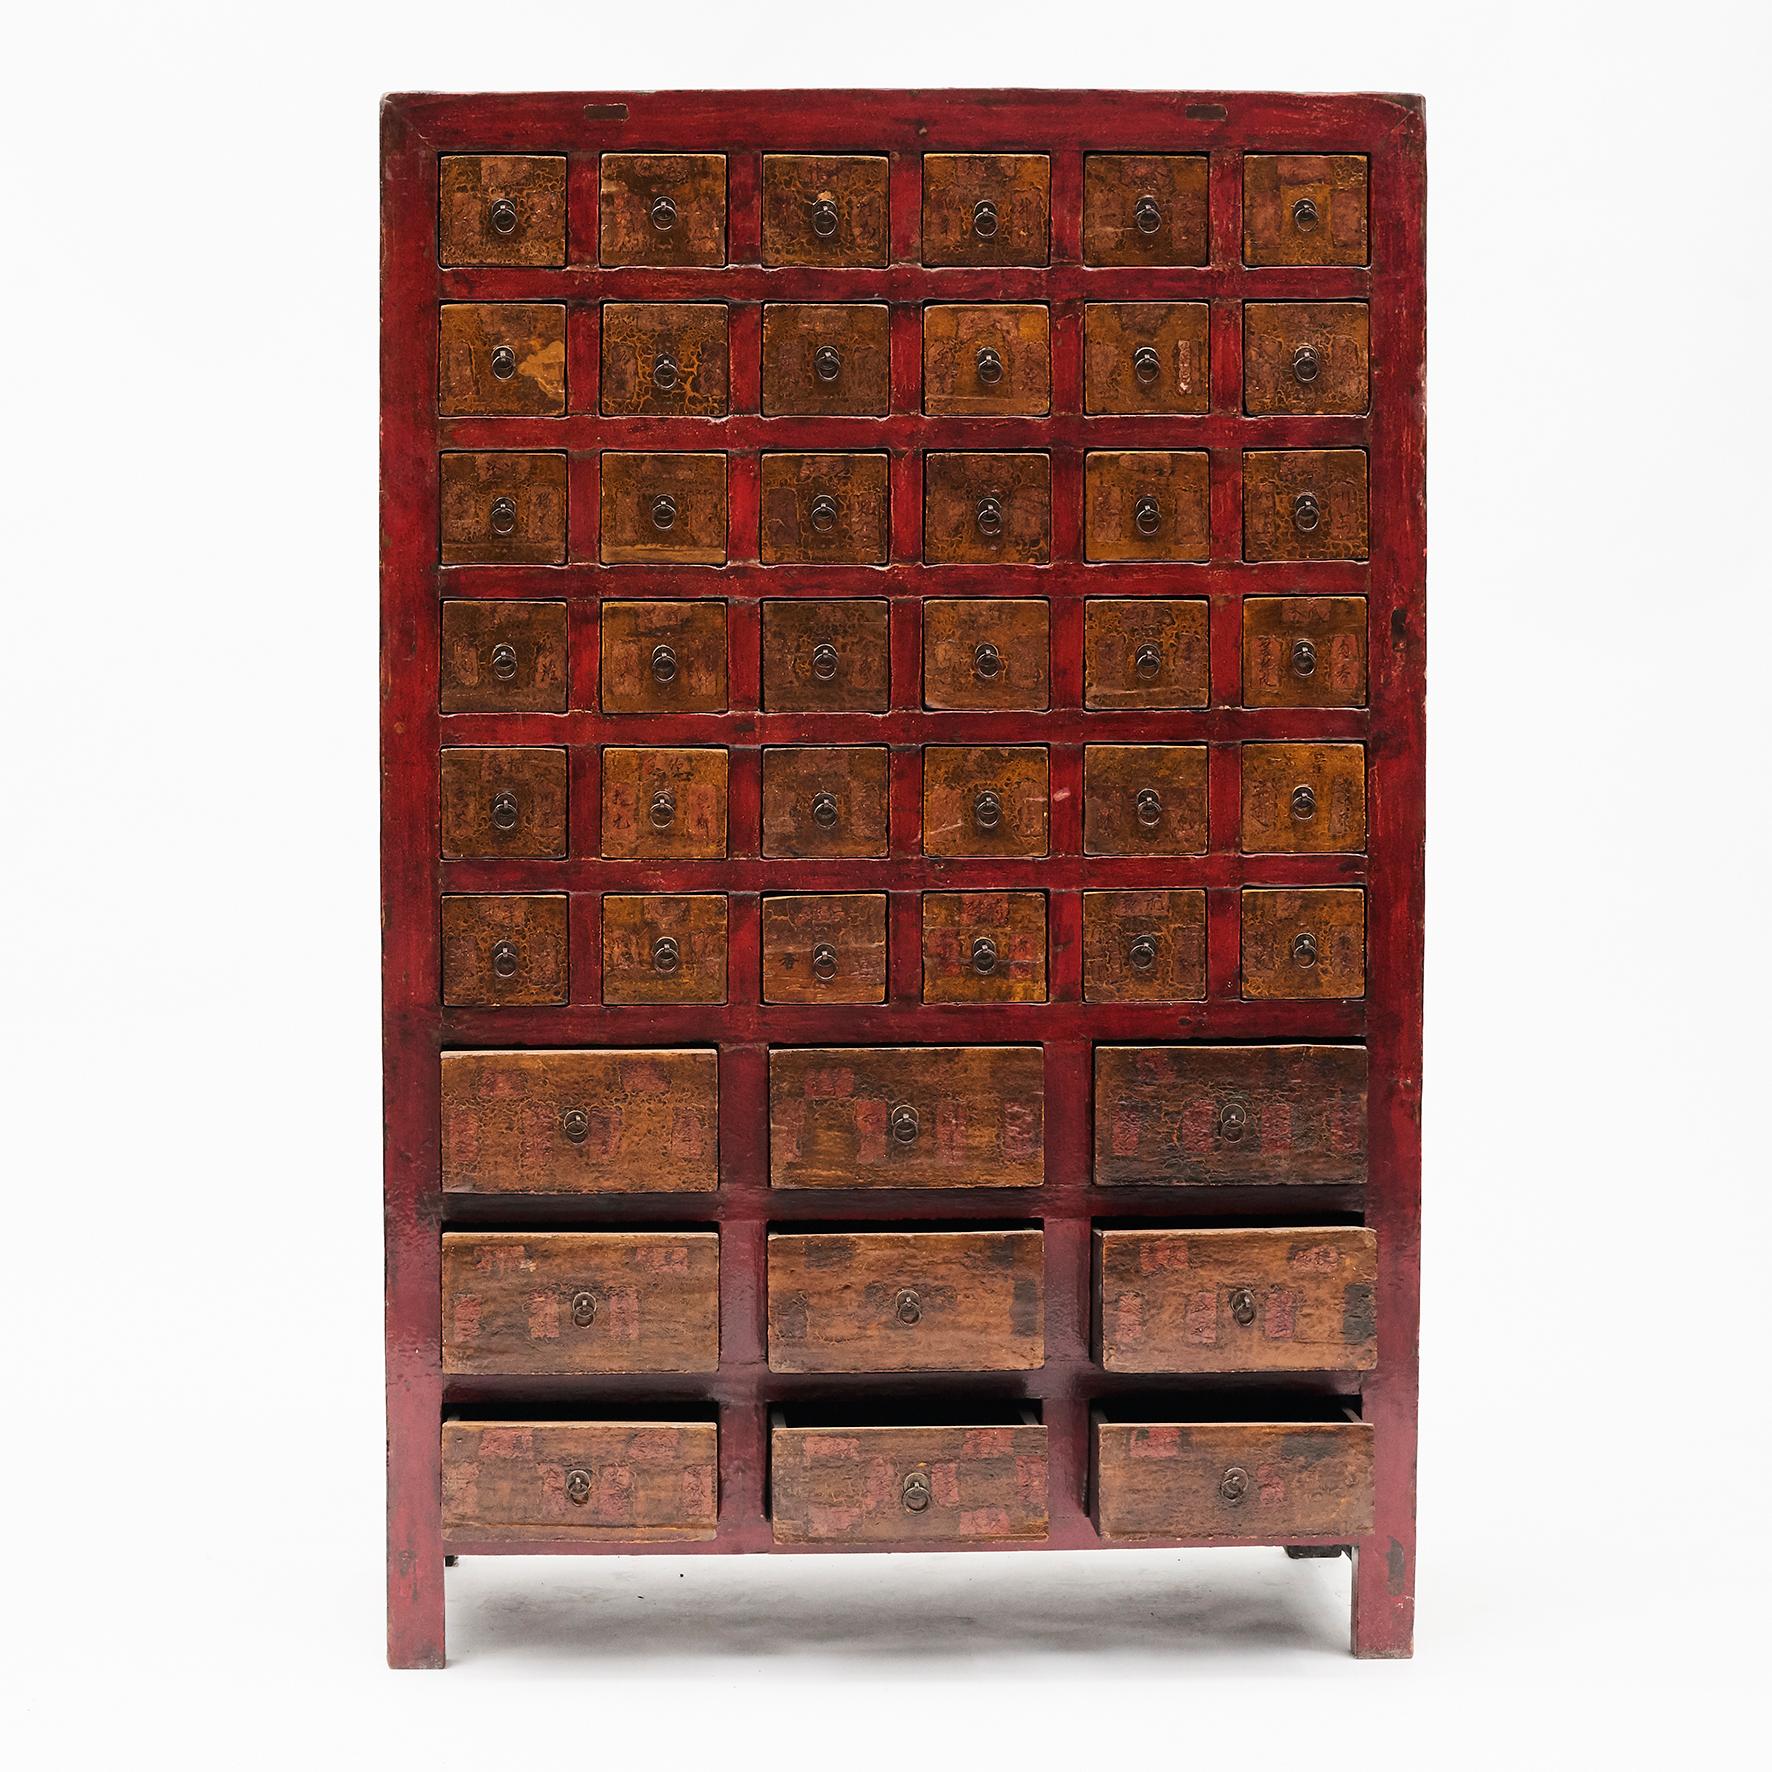 Wunderschöne chinesische Apothekertruhen aus der Zeit um 1840-1860 aus der Provinz Shanxi, China. 
45 Schubladen und Originallackierung. In den Schubladen befinden sich noch einige Reste der Beschreibungen mit den Namen der verschiedenen